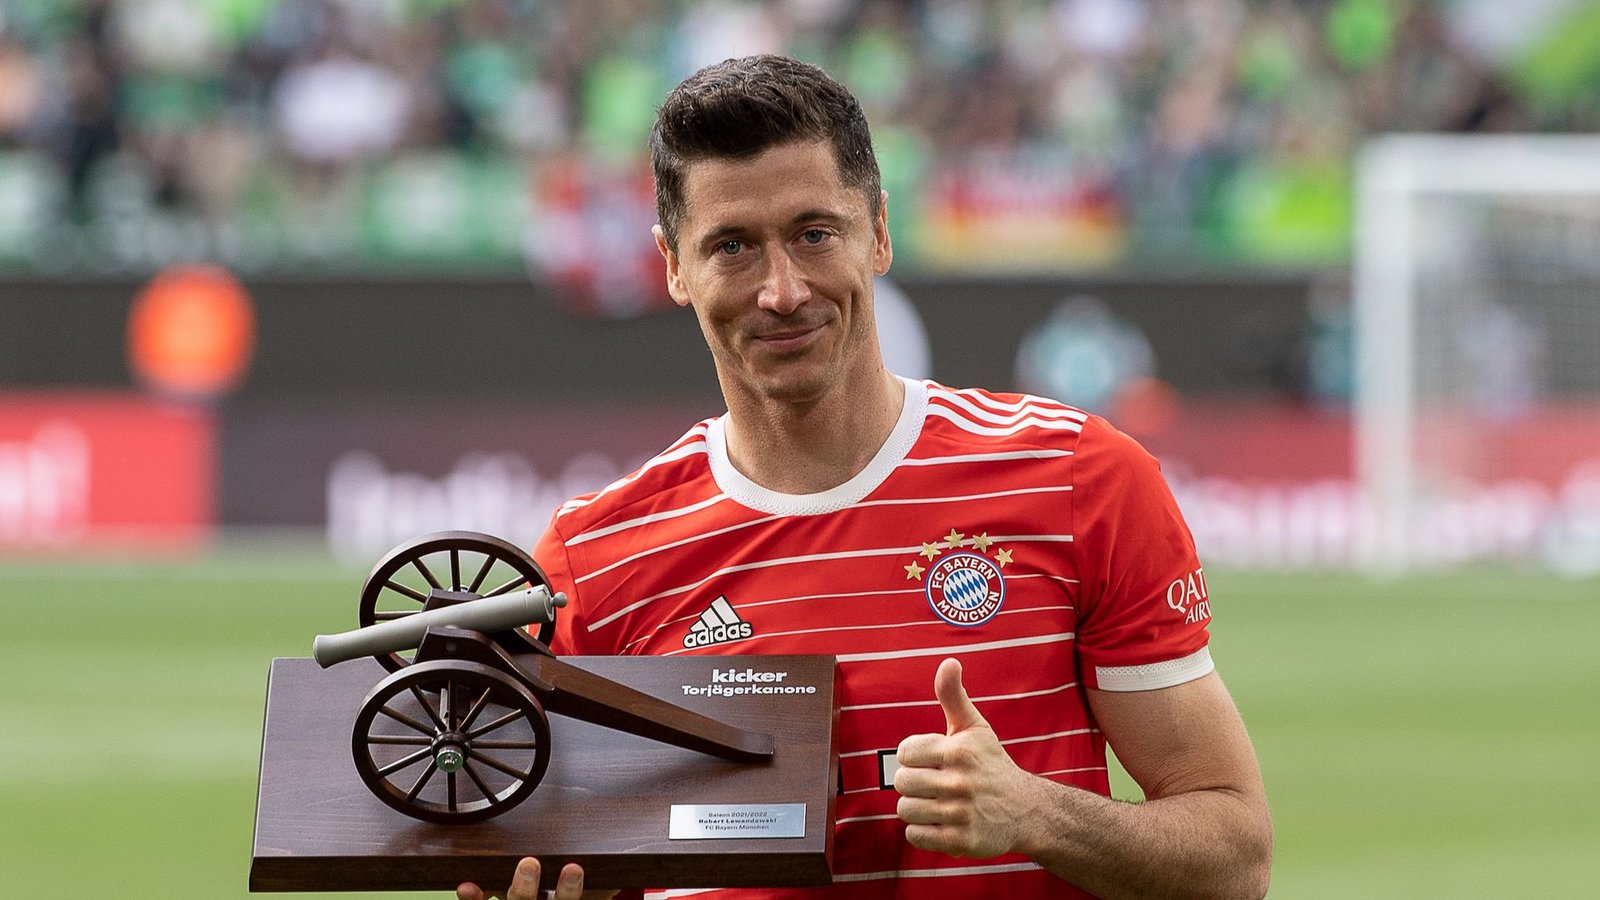 Bayern-Star Robert Lewandowski hat zum fünften Mal die Torjäger-Kanone gewonnen.Foto: Swen Pförtner/dpa